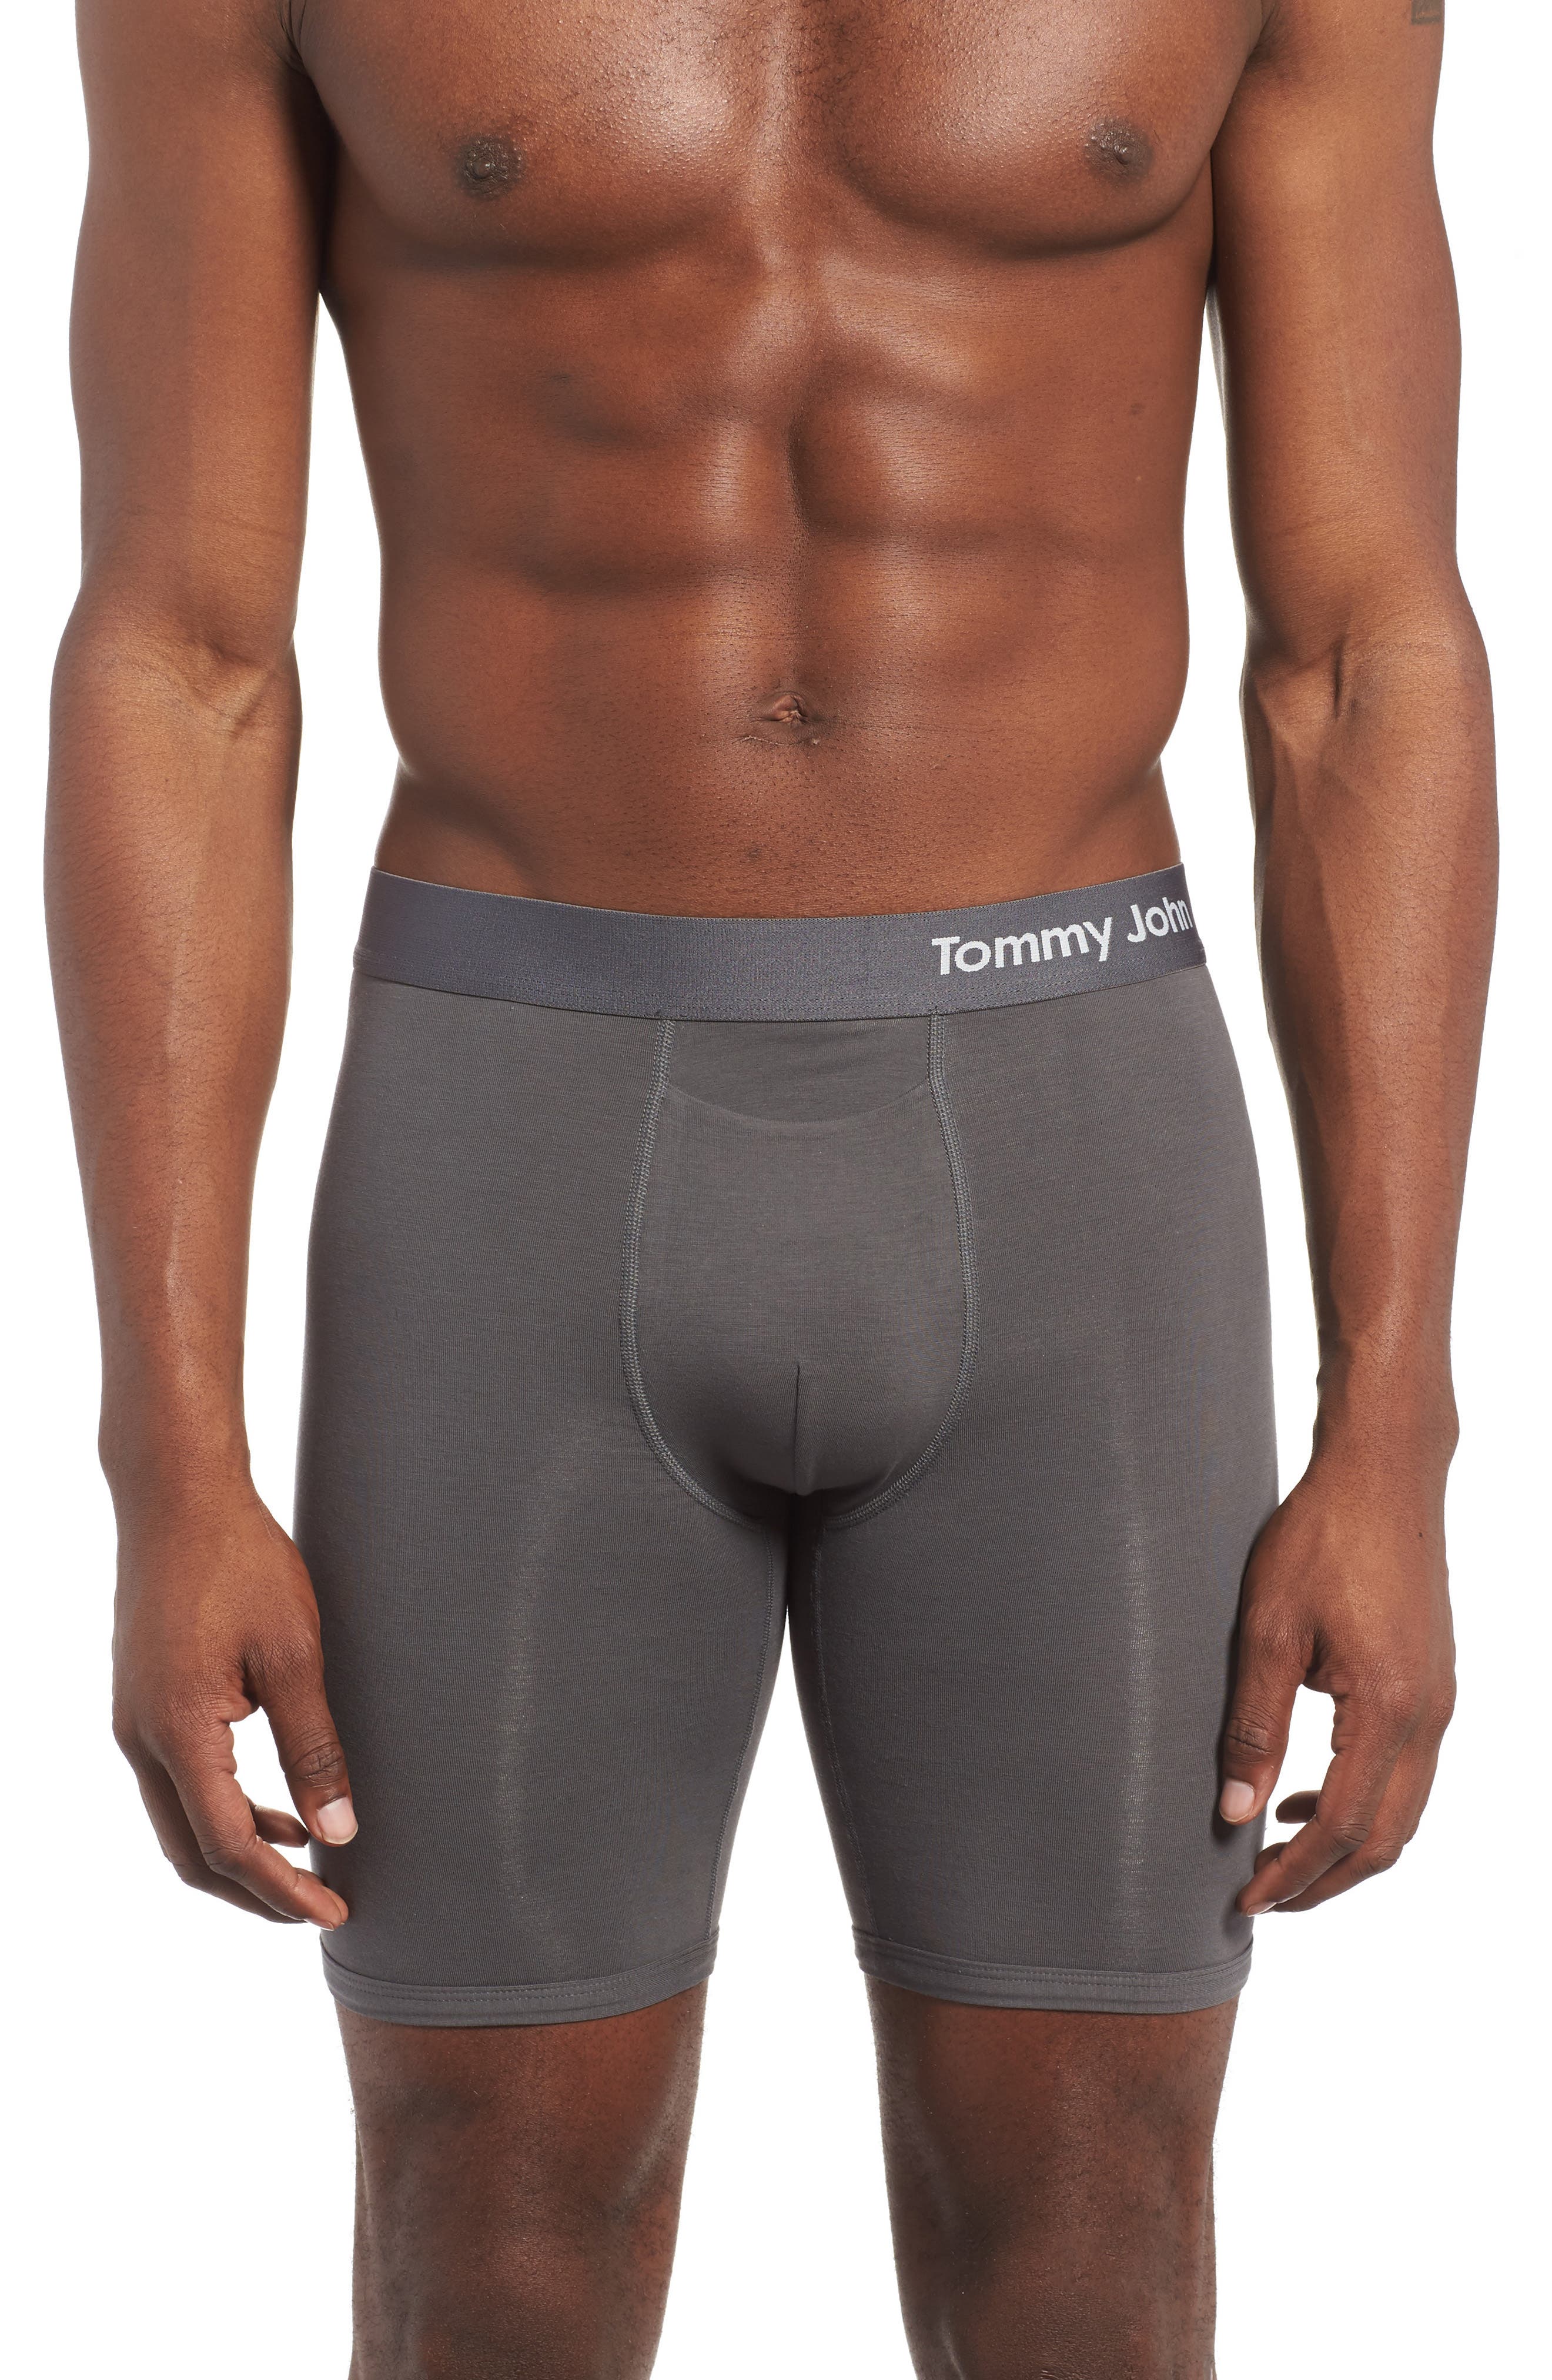 tommy john's underwear for women